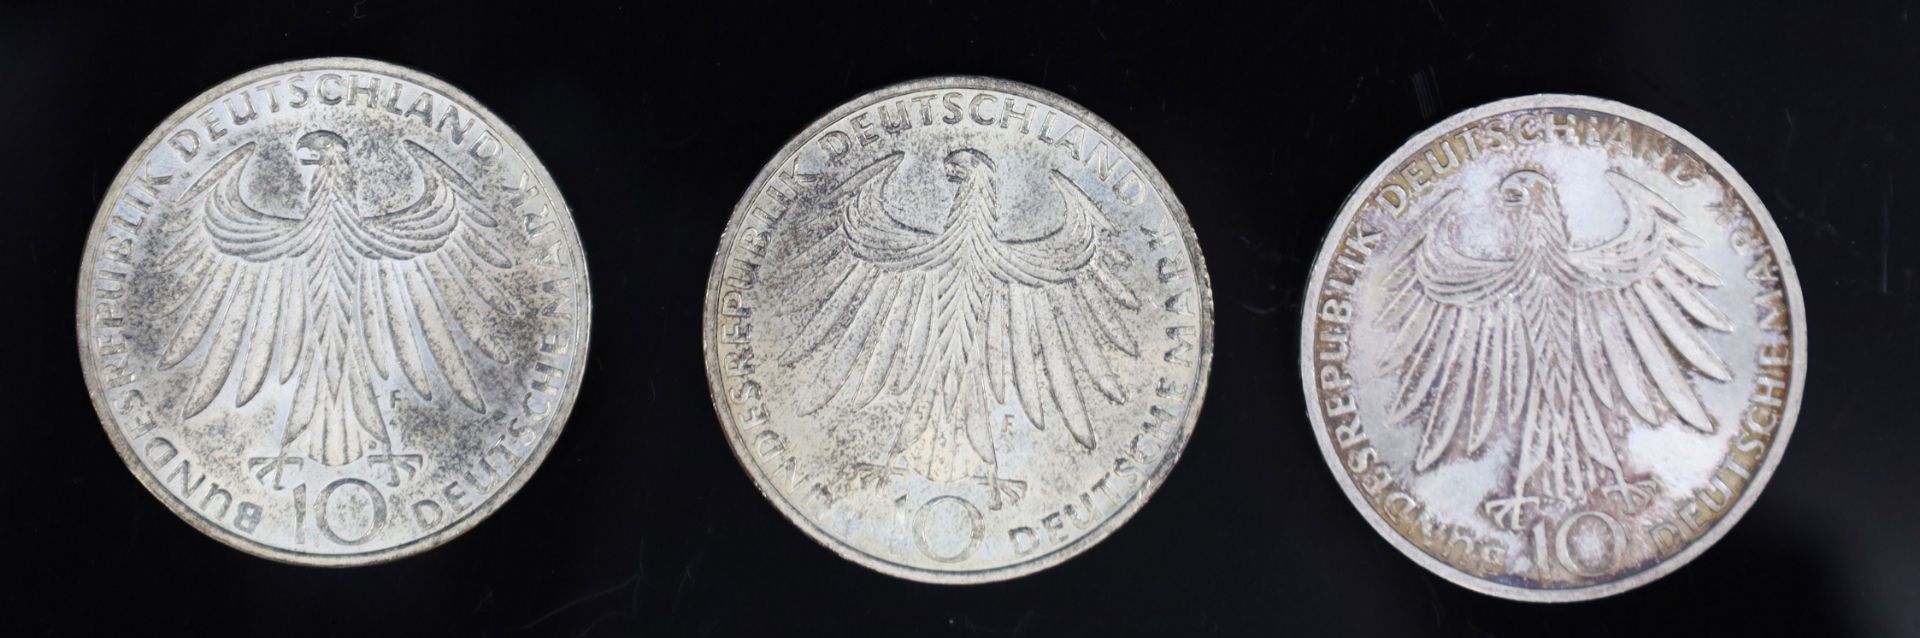 9x "10 Deutsche Mark". Olympiade München. Silbermünzen. - Bild 3 aus 7